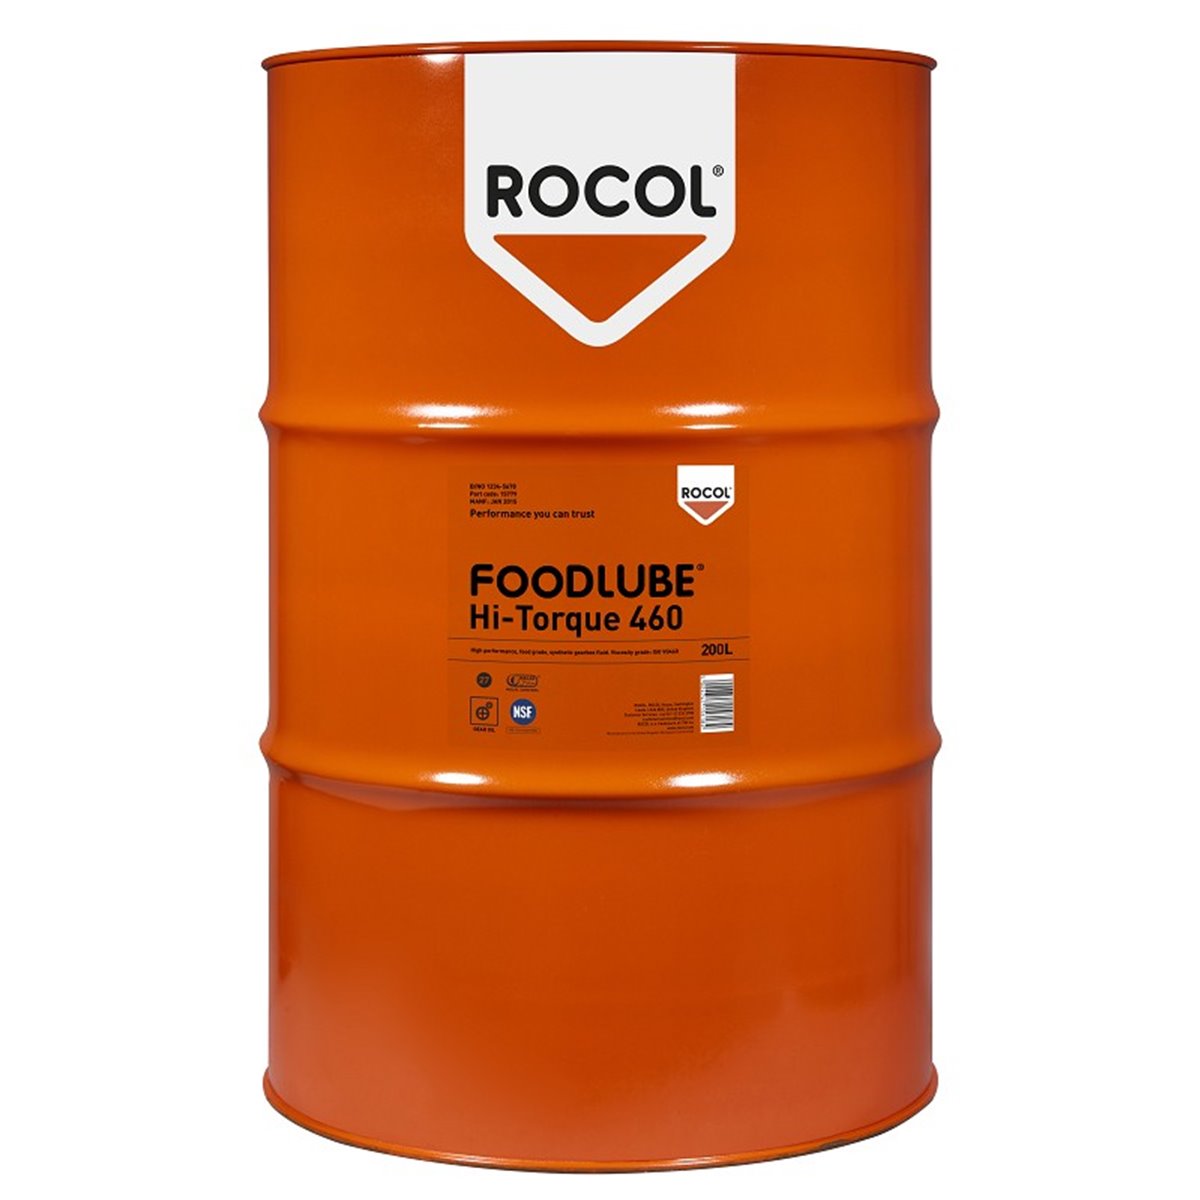 FOODLUBE HI-TORQUE 460 Rocol 200l RS15779